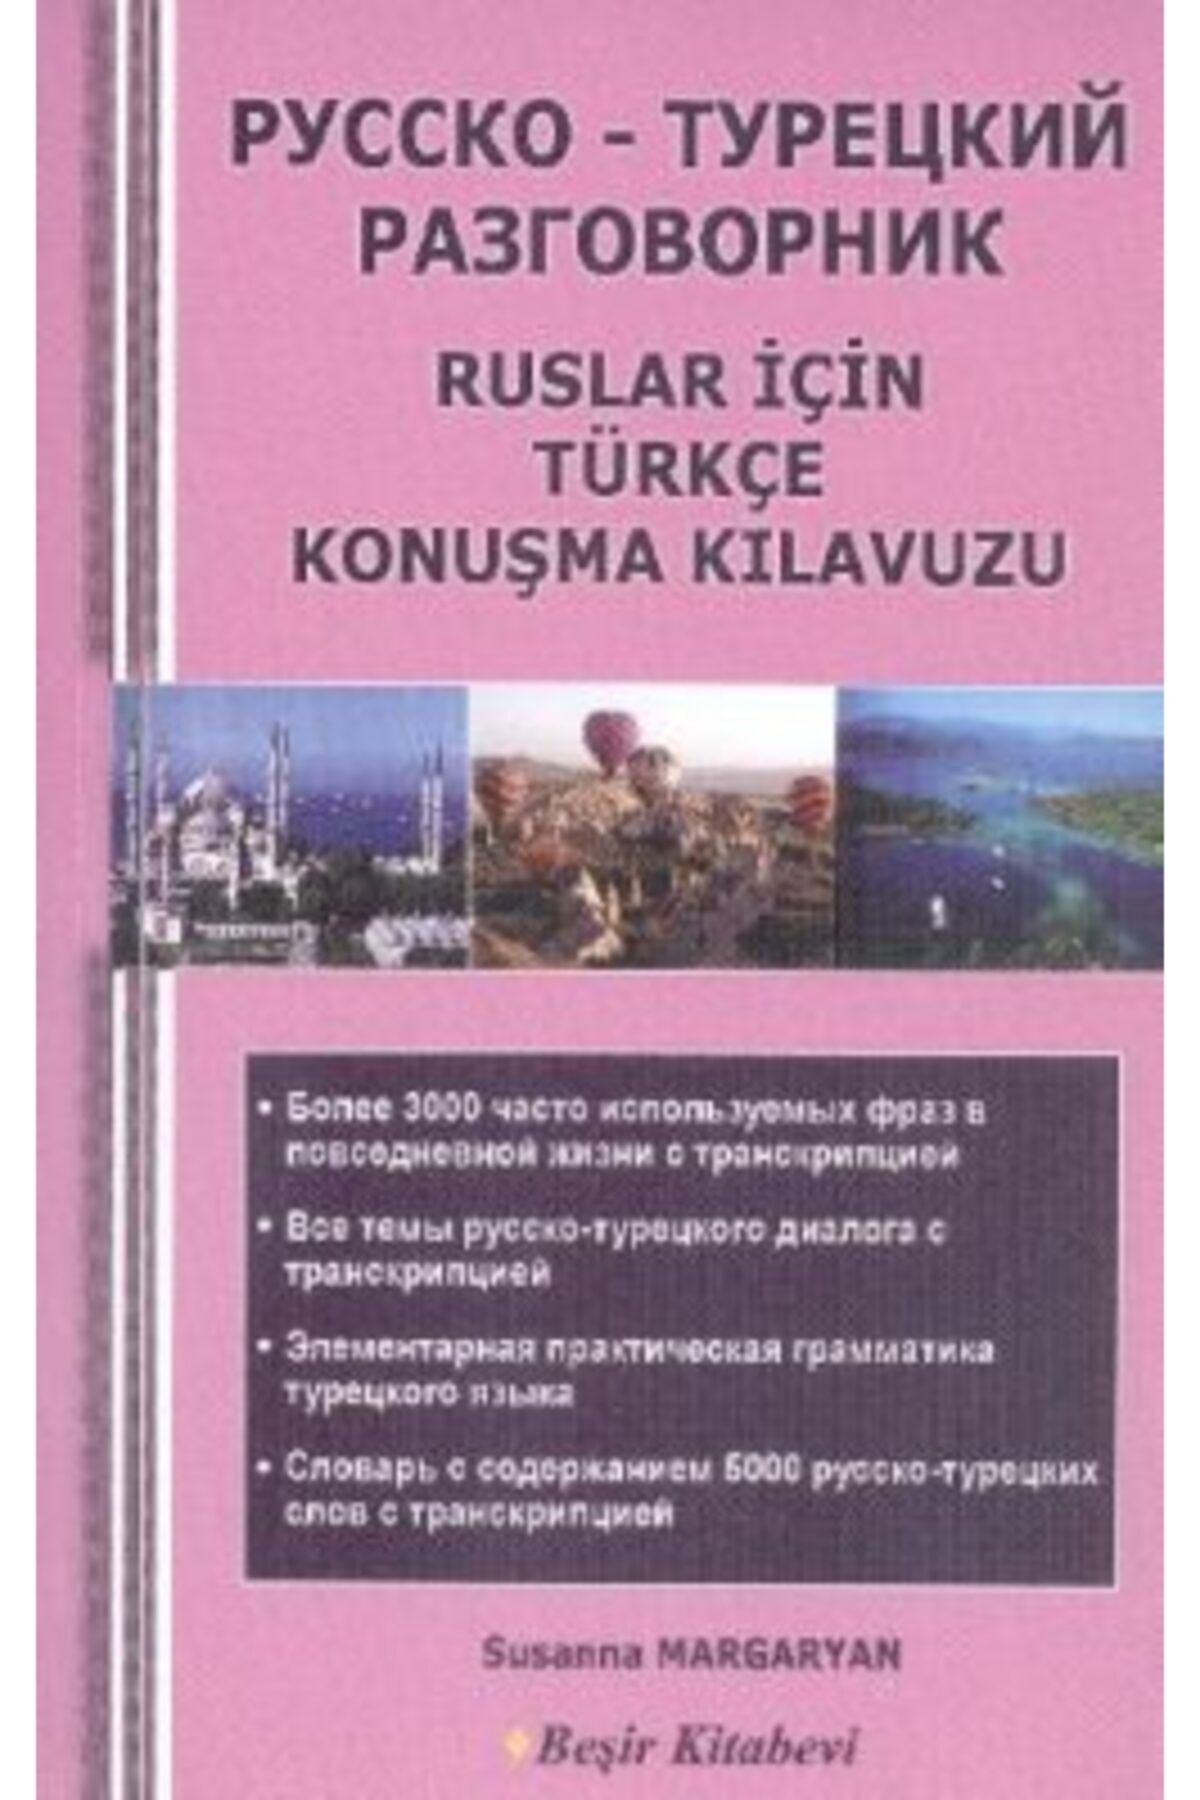 Beşir Kitabevi Ruslar Için Türkçe Konuşma Kılavuzu